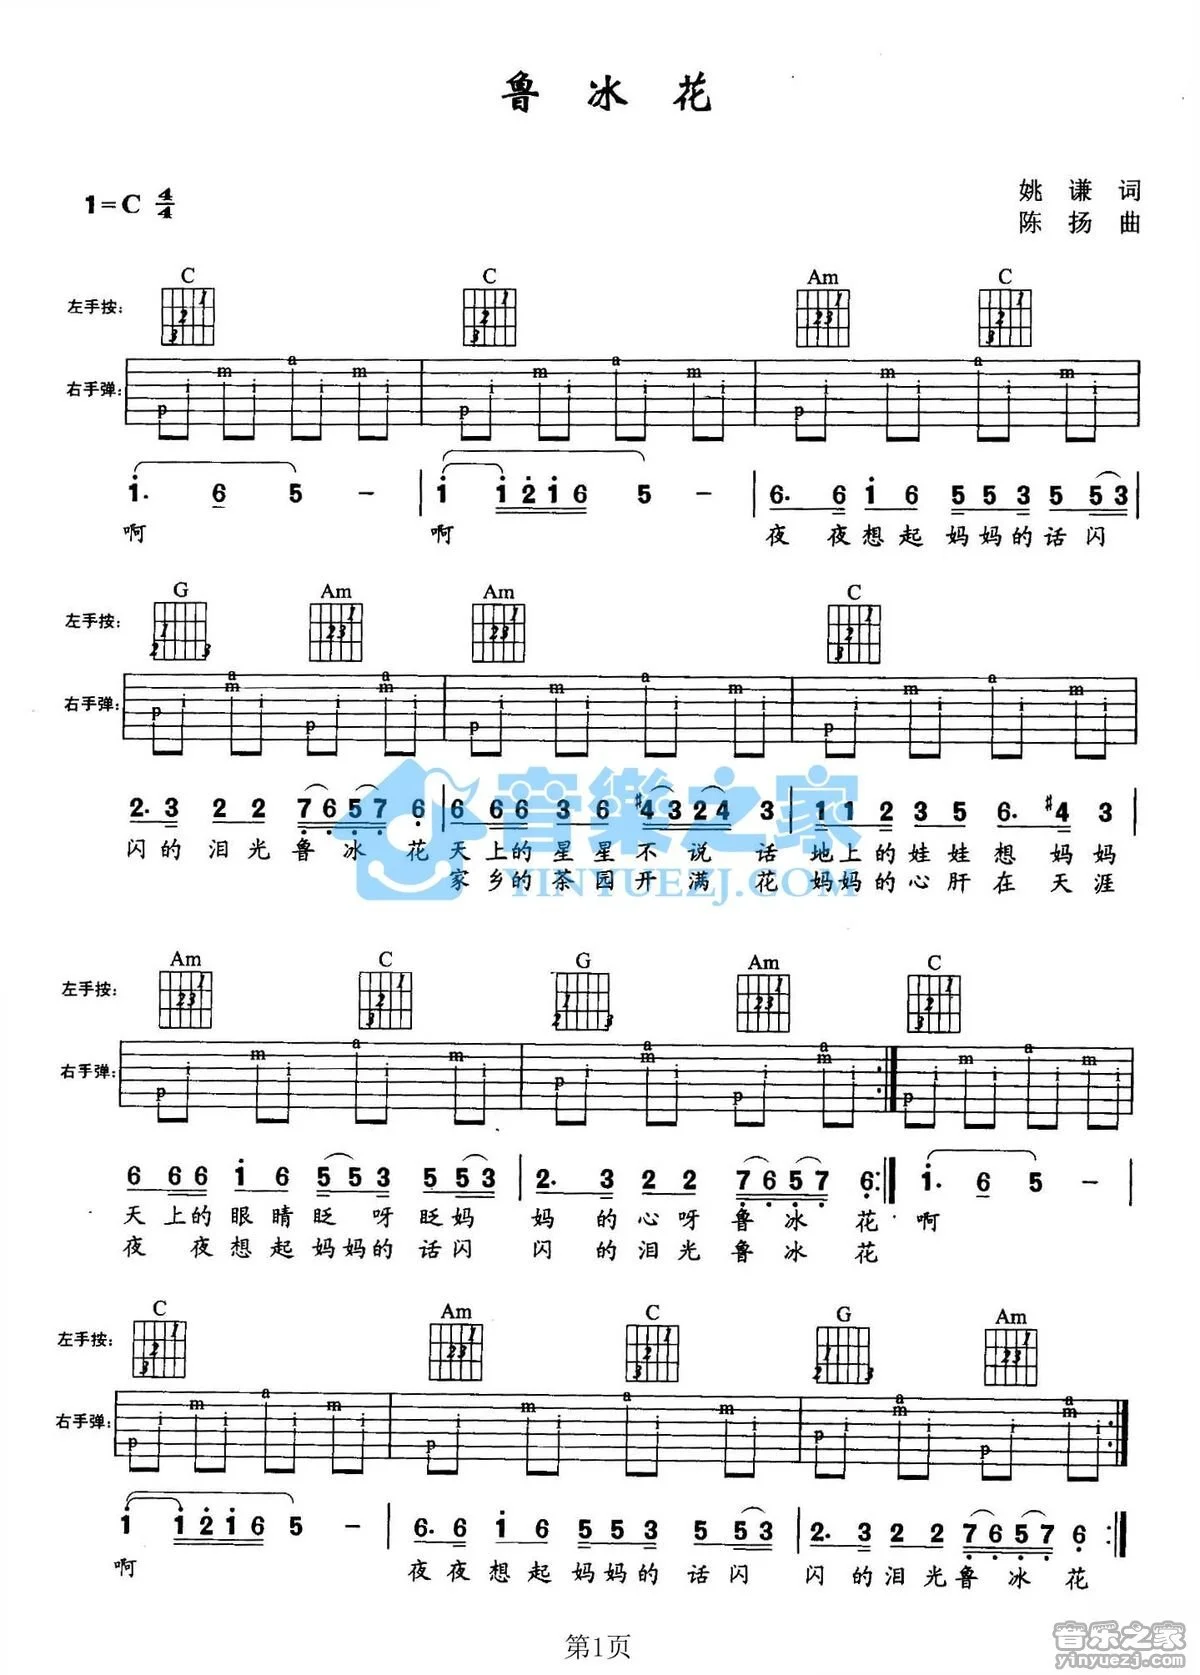 鲁冰花-完整版五线谱预览3-钢琴谱文件（五线谱、双手简谱、数字谱、Midi、PDF）免费下载